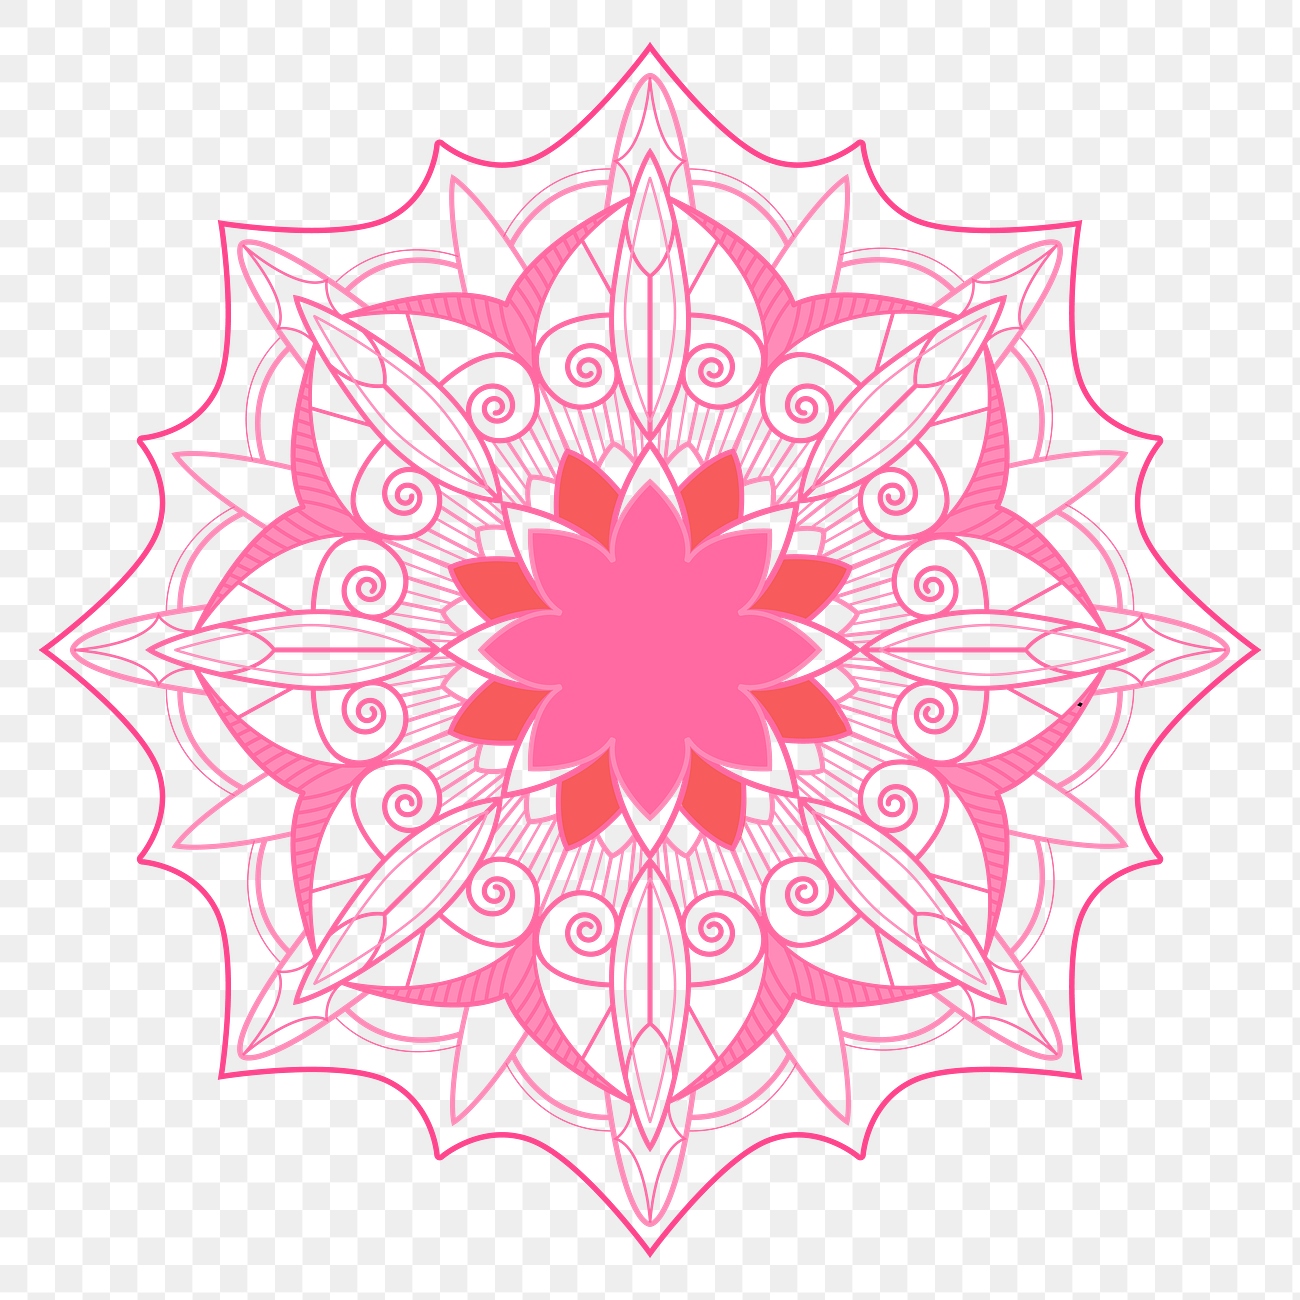 Pink arabesque patterned design element transparent png | Free ...